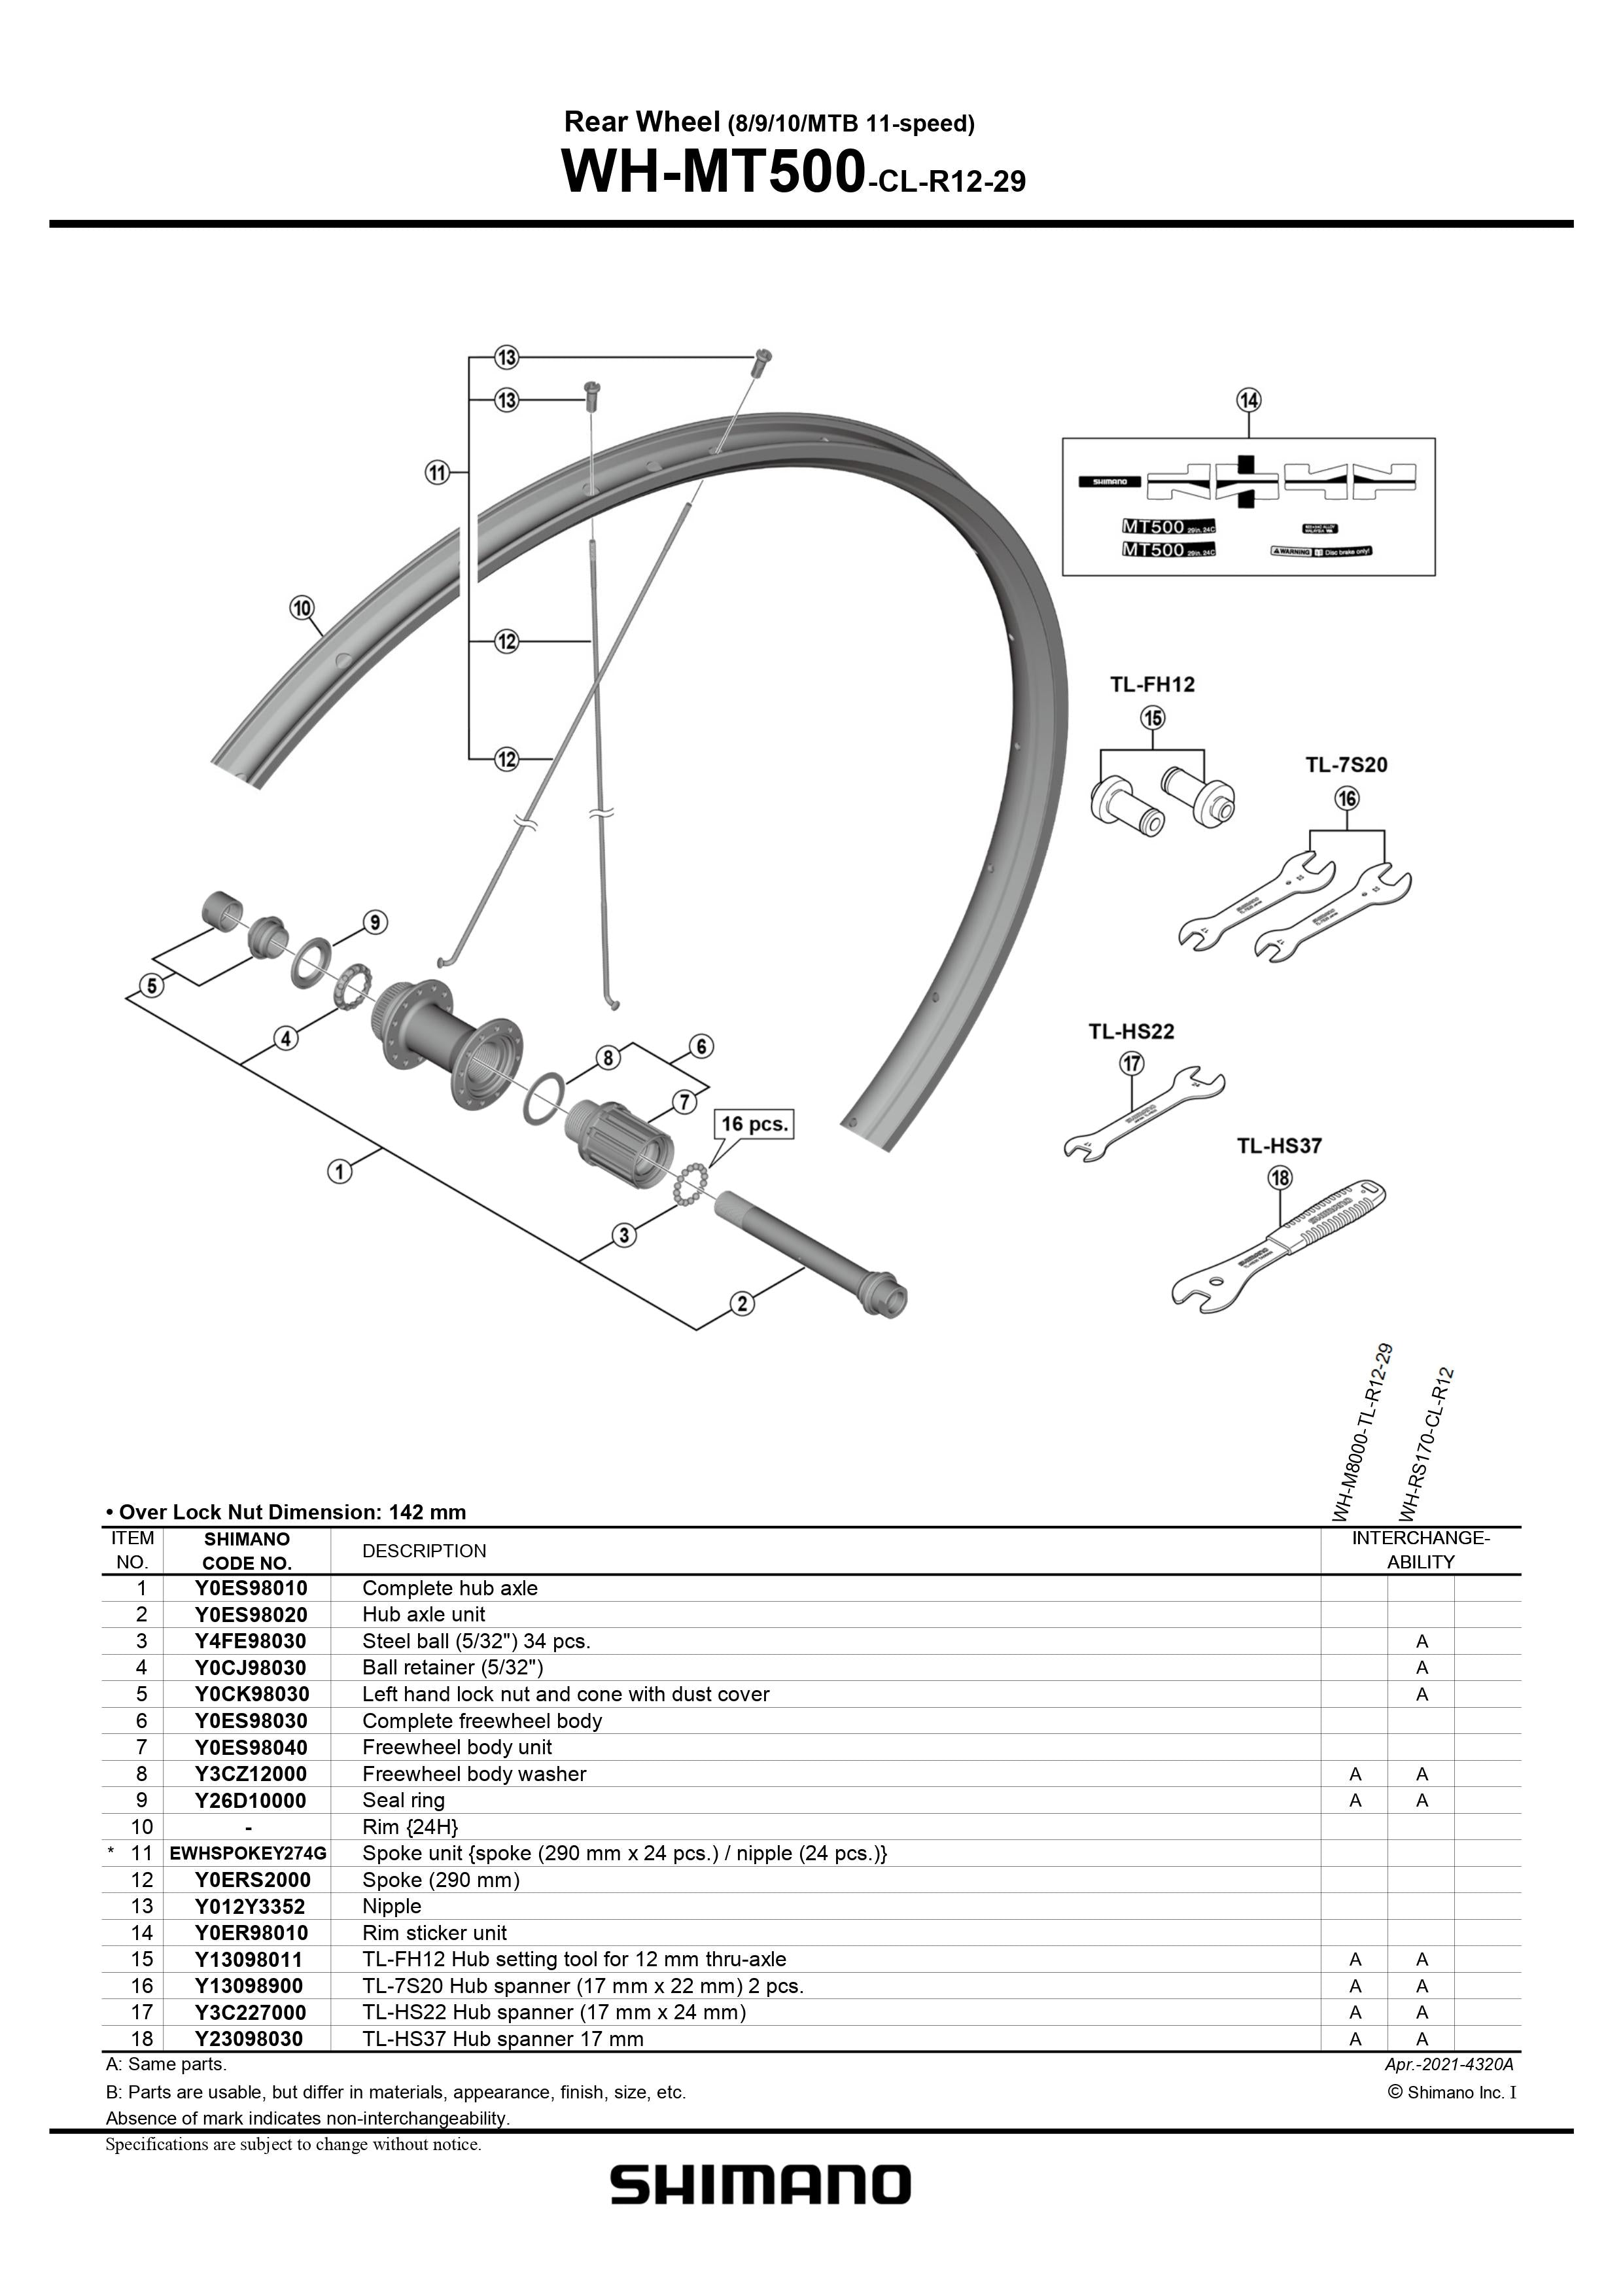 SHIMANO WH-MT500-CL-R12-29 Rear Wheel Complete Hub Axle - 8/9/10/MTB -  11-speed - Y0ES98010